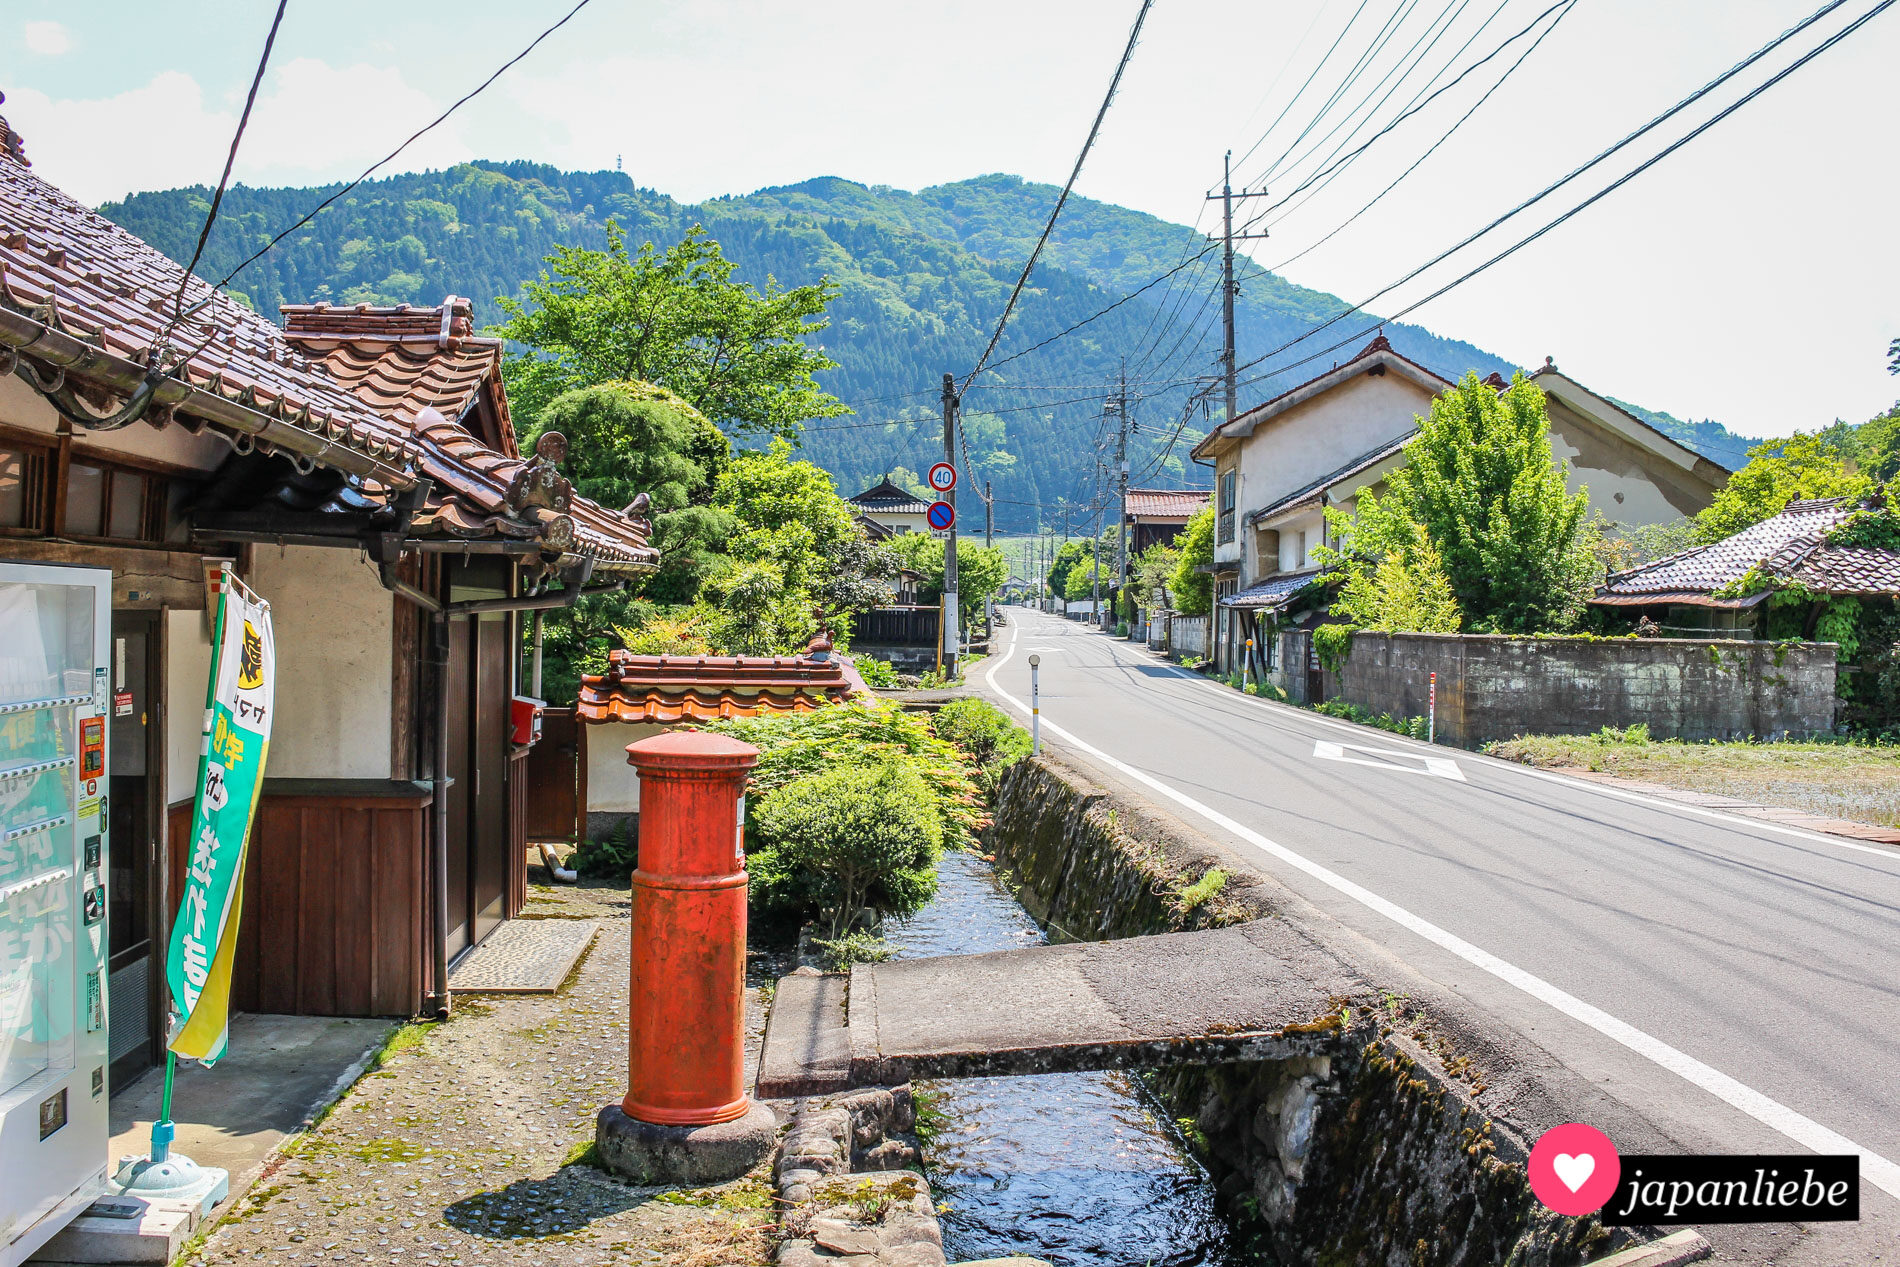 Ein typisch japanischer Postkasten in der Stadt Tsuwano.